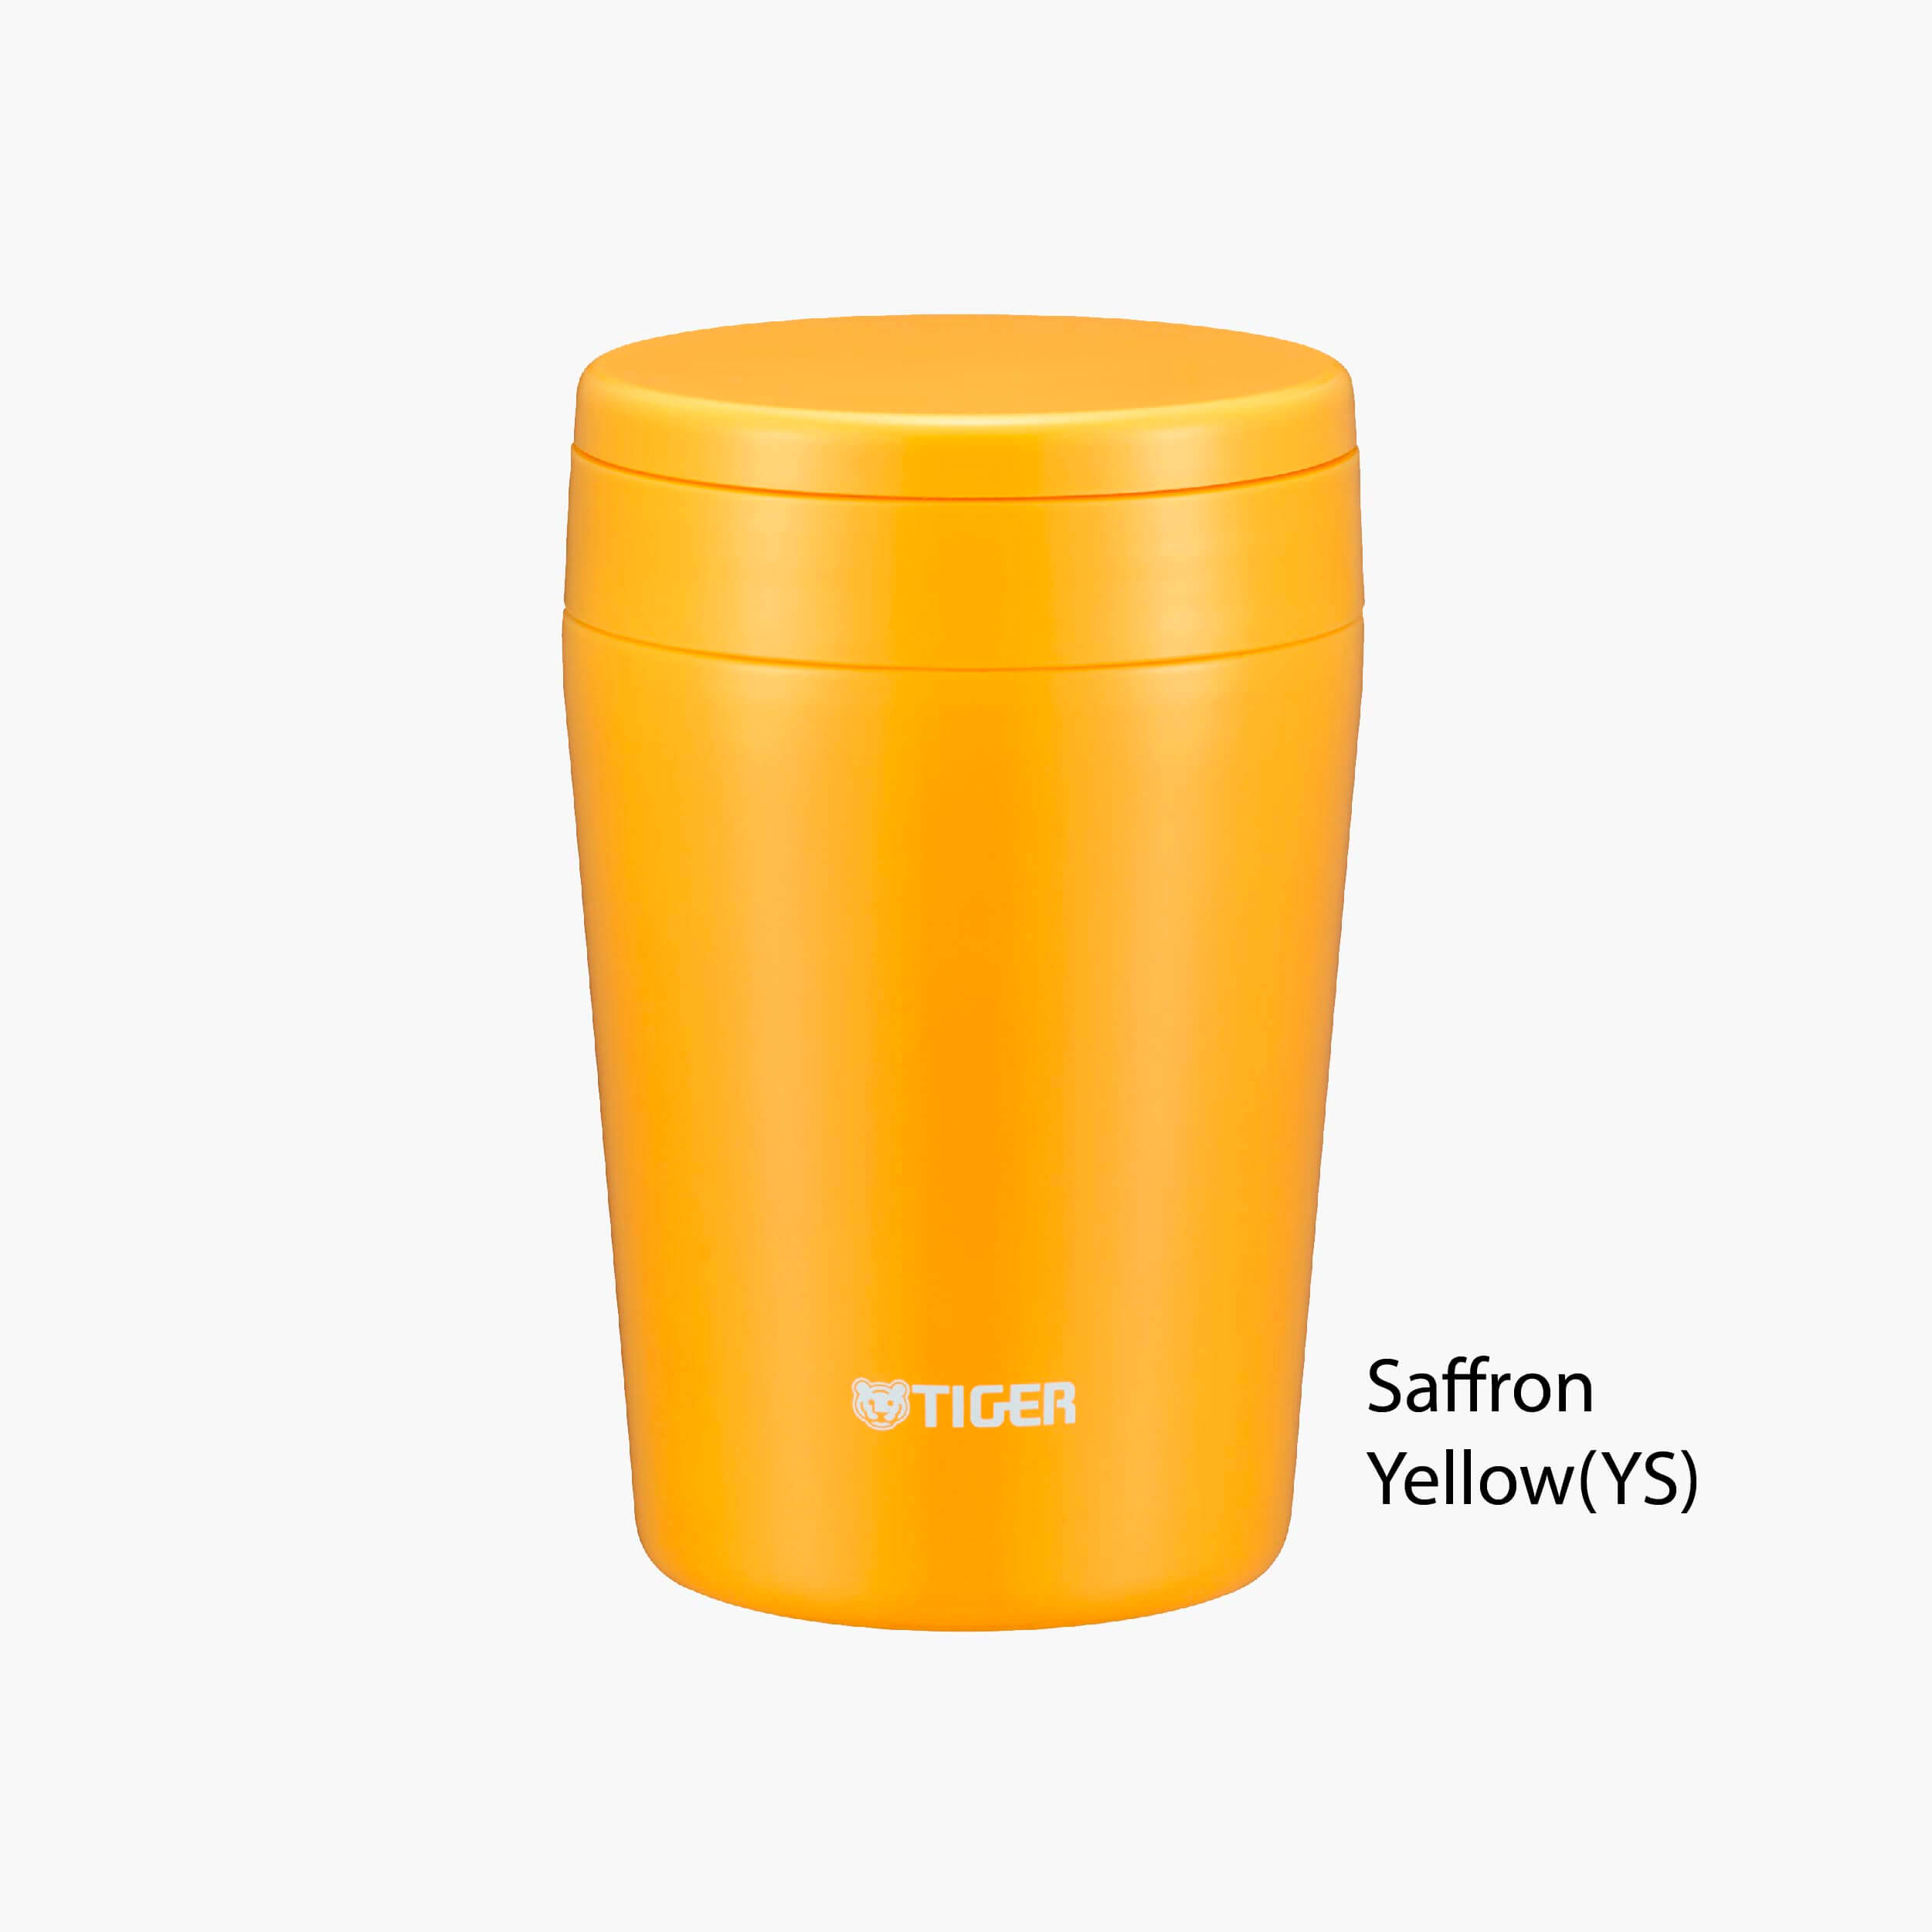 Saffron Yellow (YS)